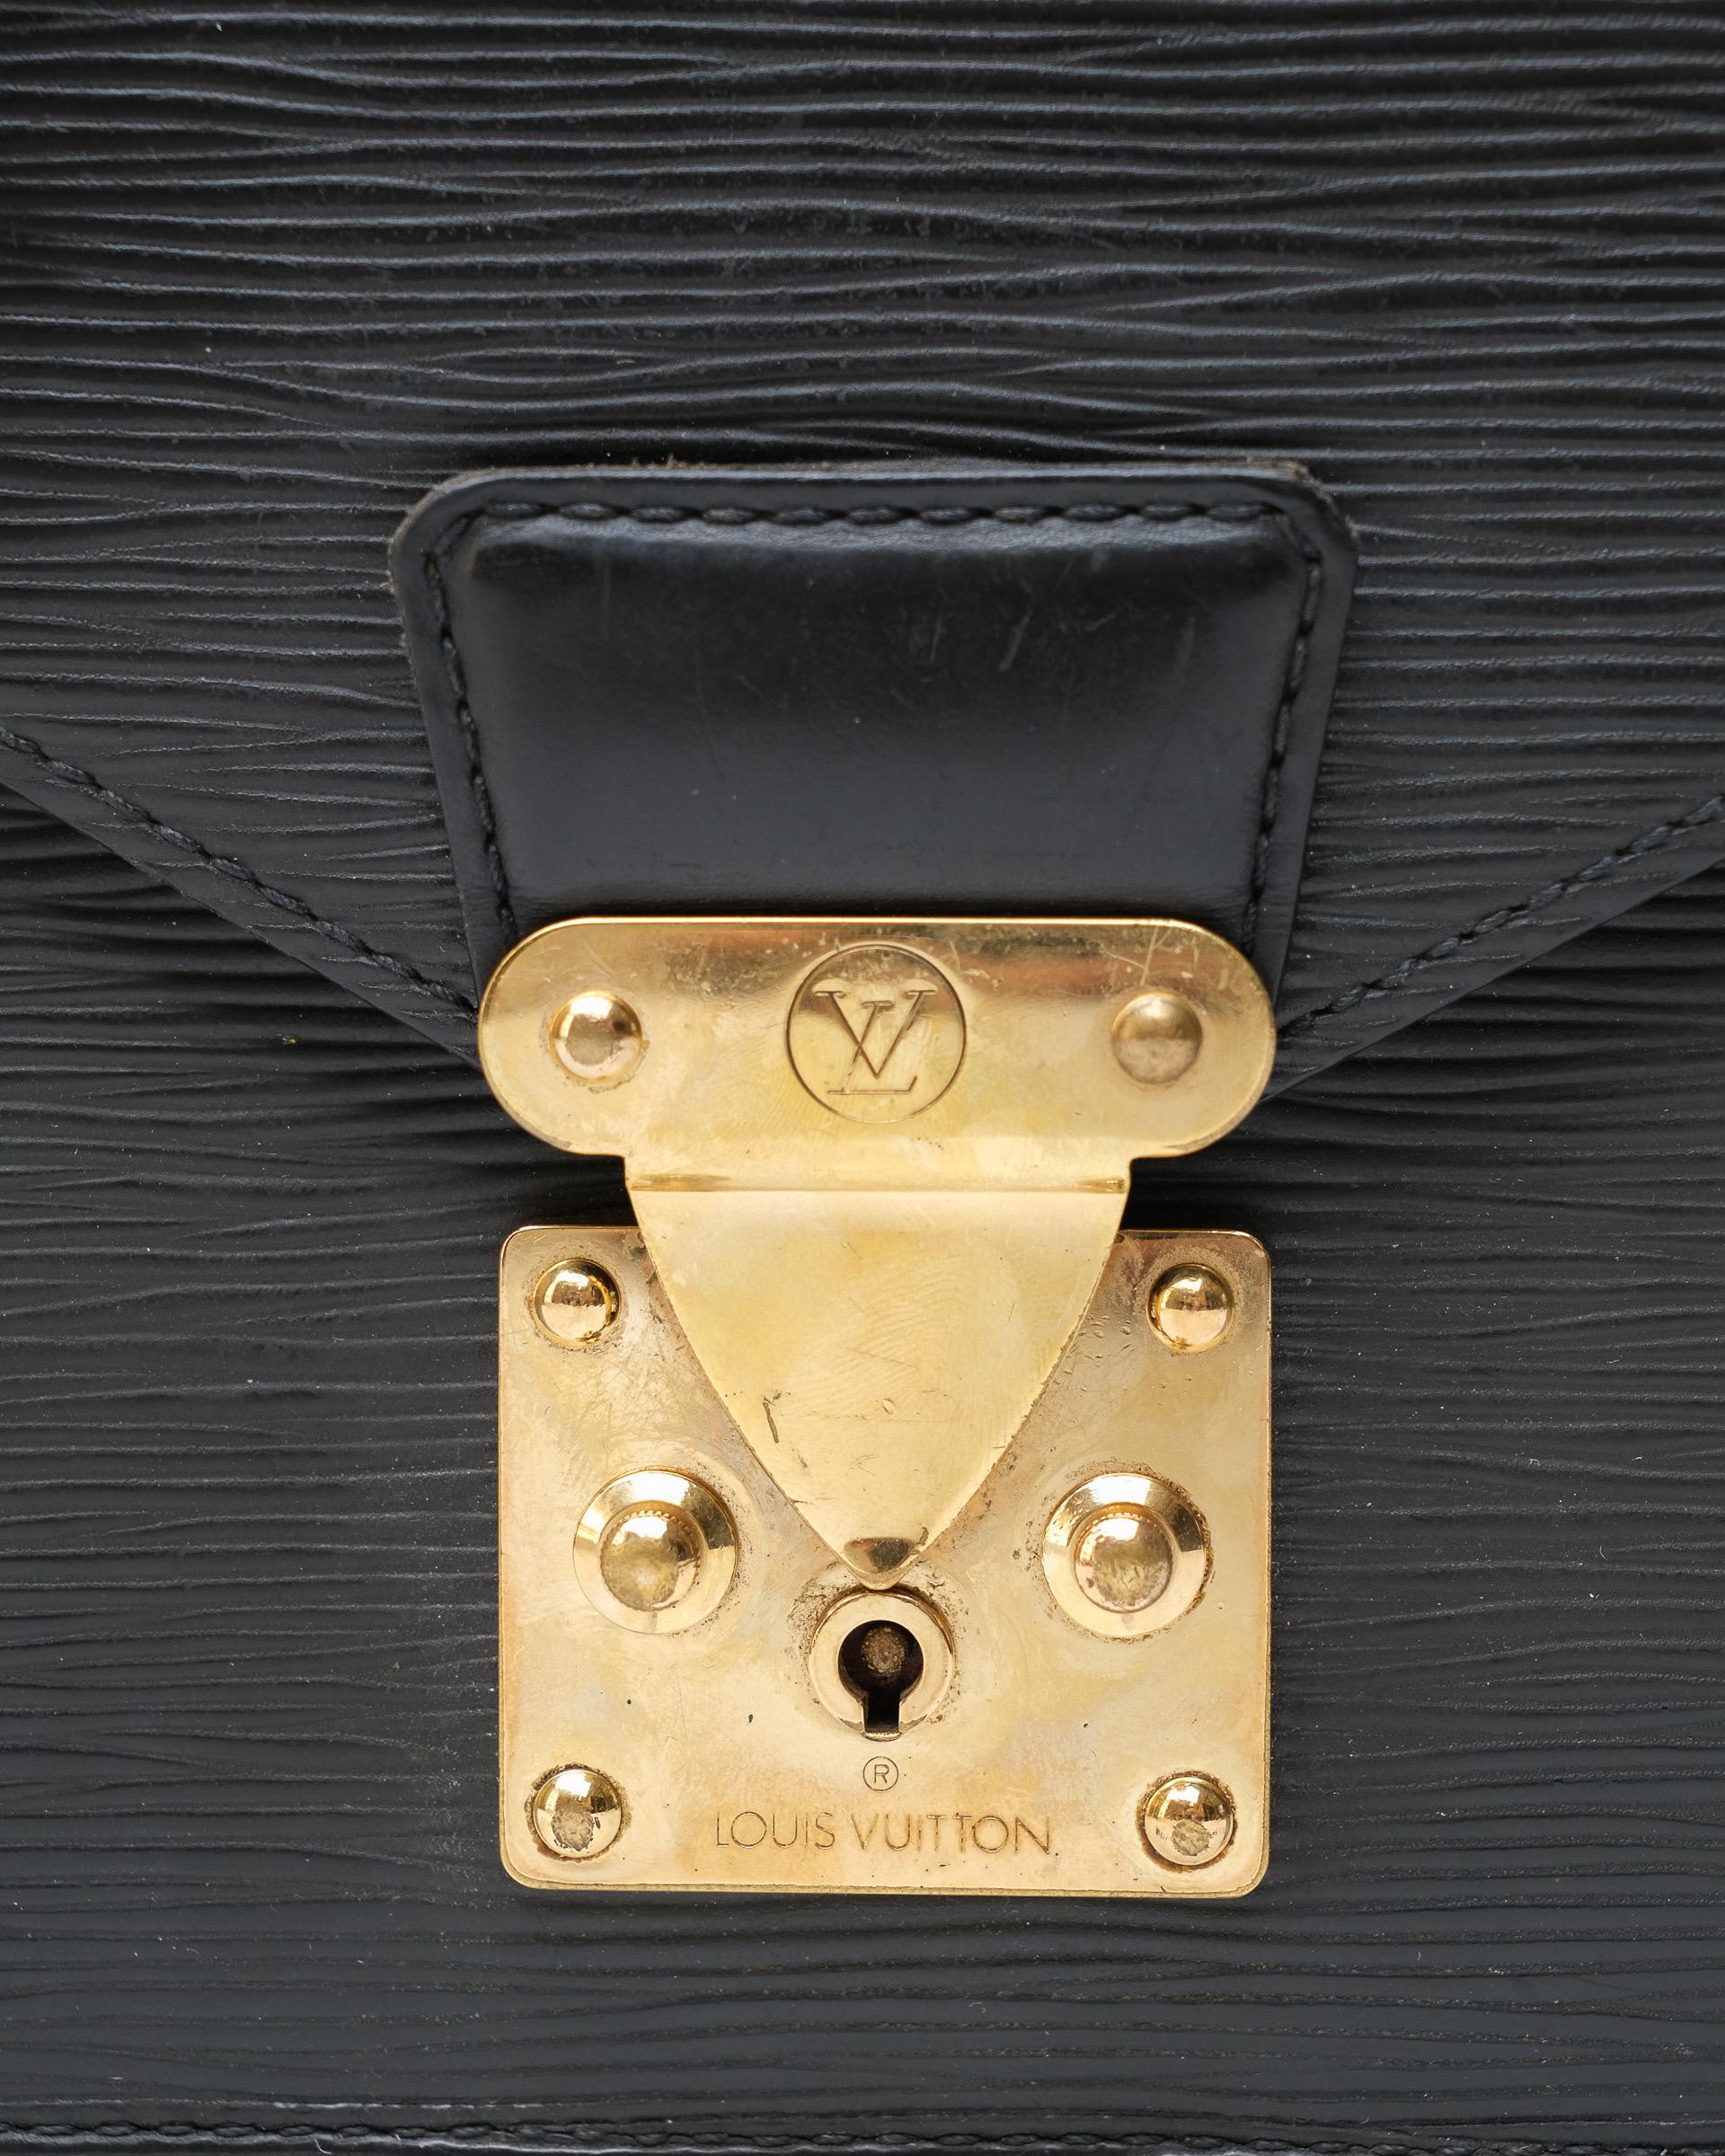 Clutch firmata Louis Vuitton, modello Dragonne, misura PM, realizzata in pelle epi nera con hardware dorati. Dotata di una chiusura ad incastro, internamente rivestita in pelle tono su tono, capiente per l’essenziale. Munita di polsino non